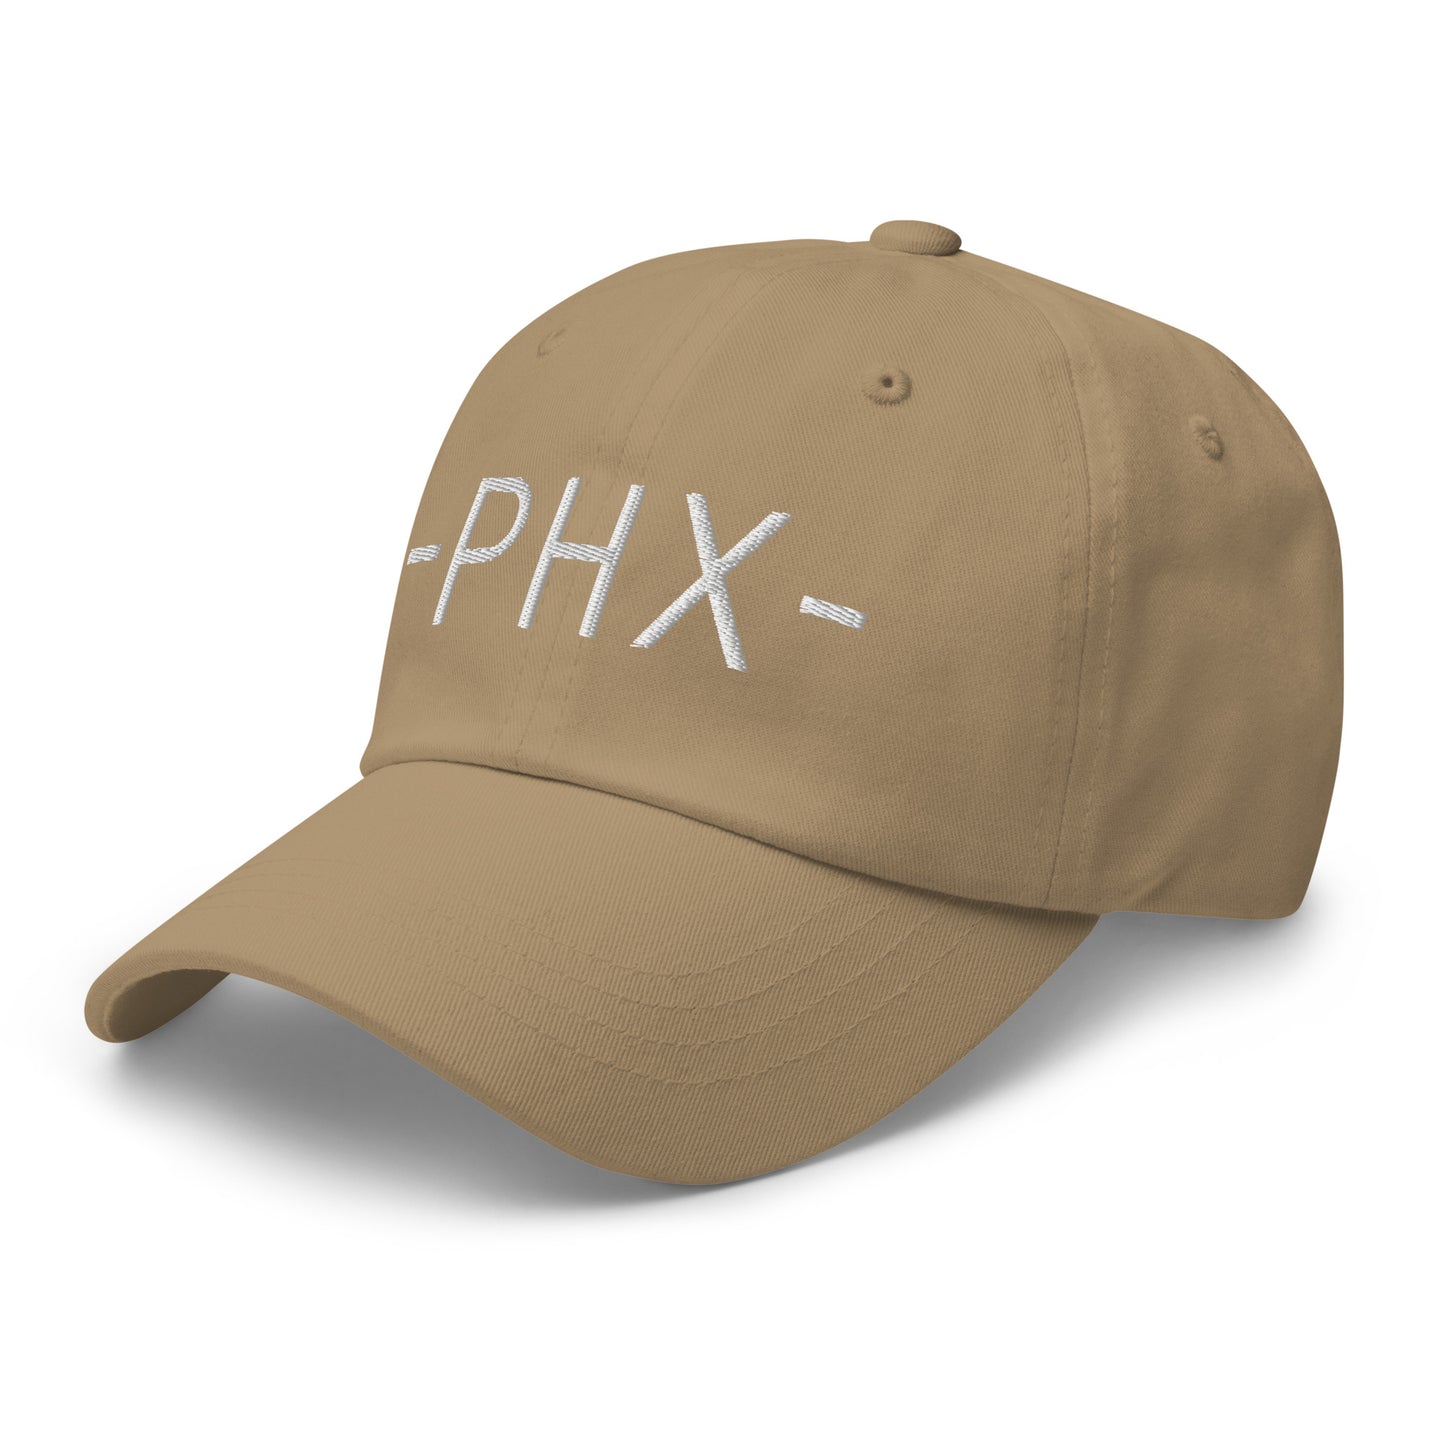 Souvenir Baseball Cap - White • PHX Phoenix • YHM Designs - Image 22